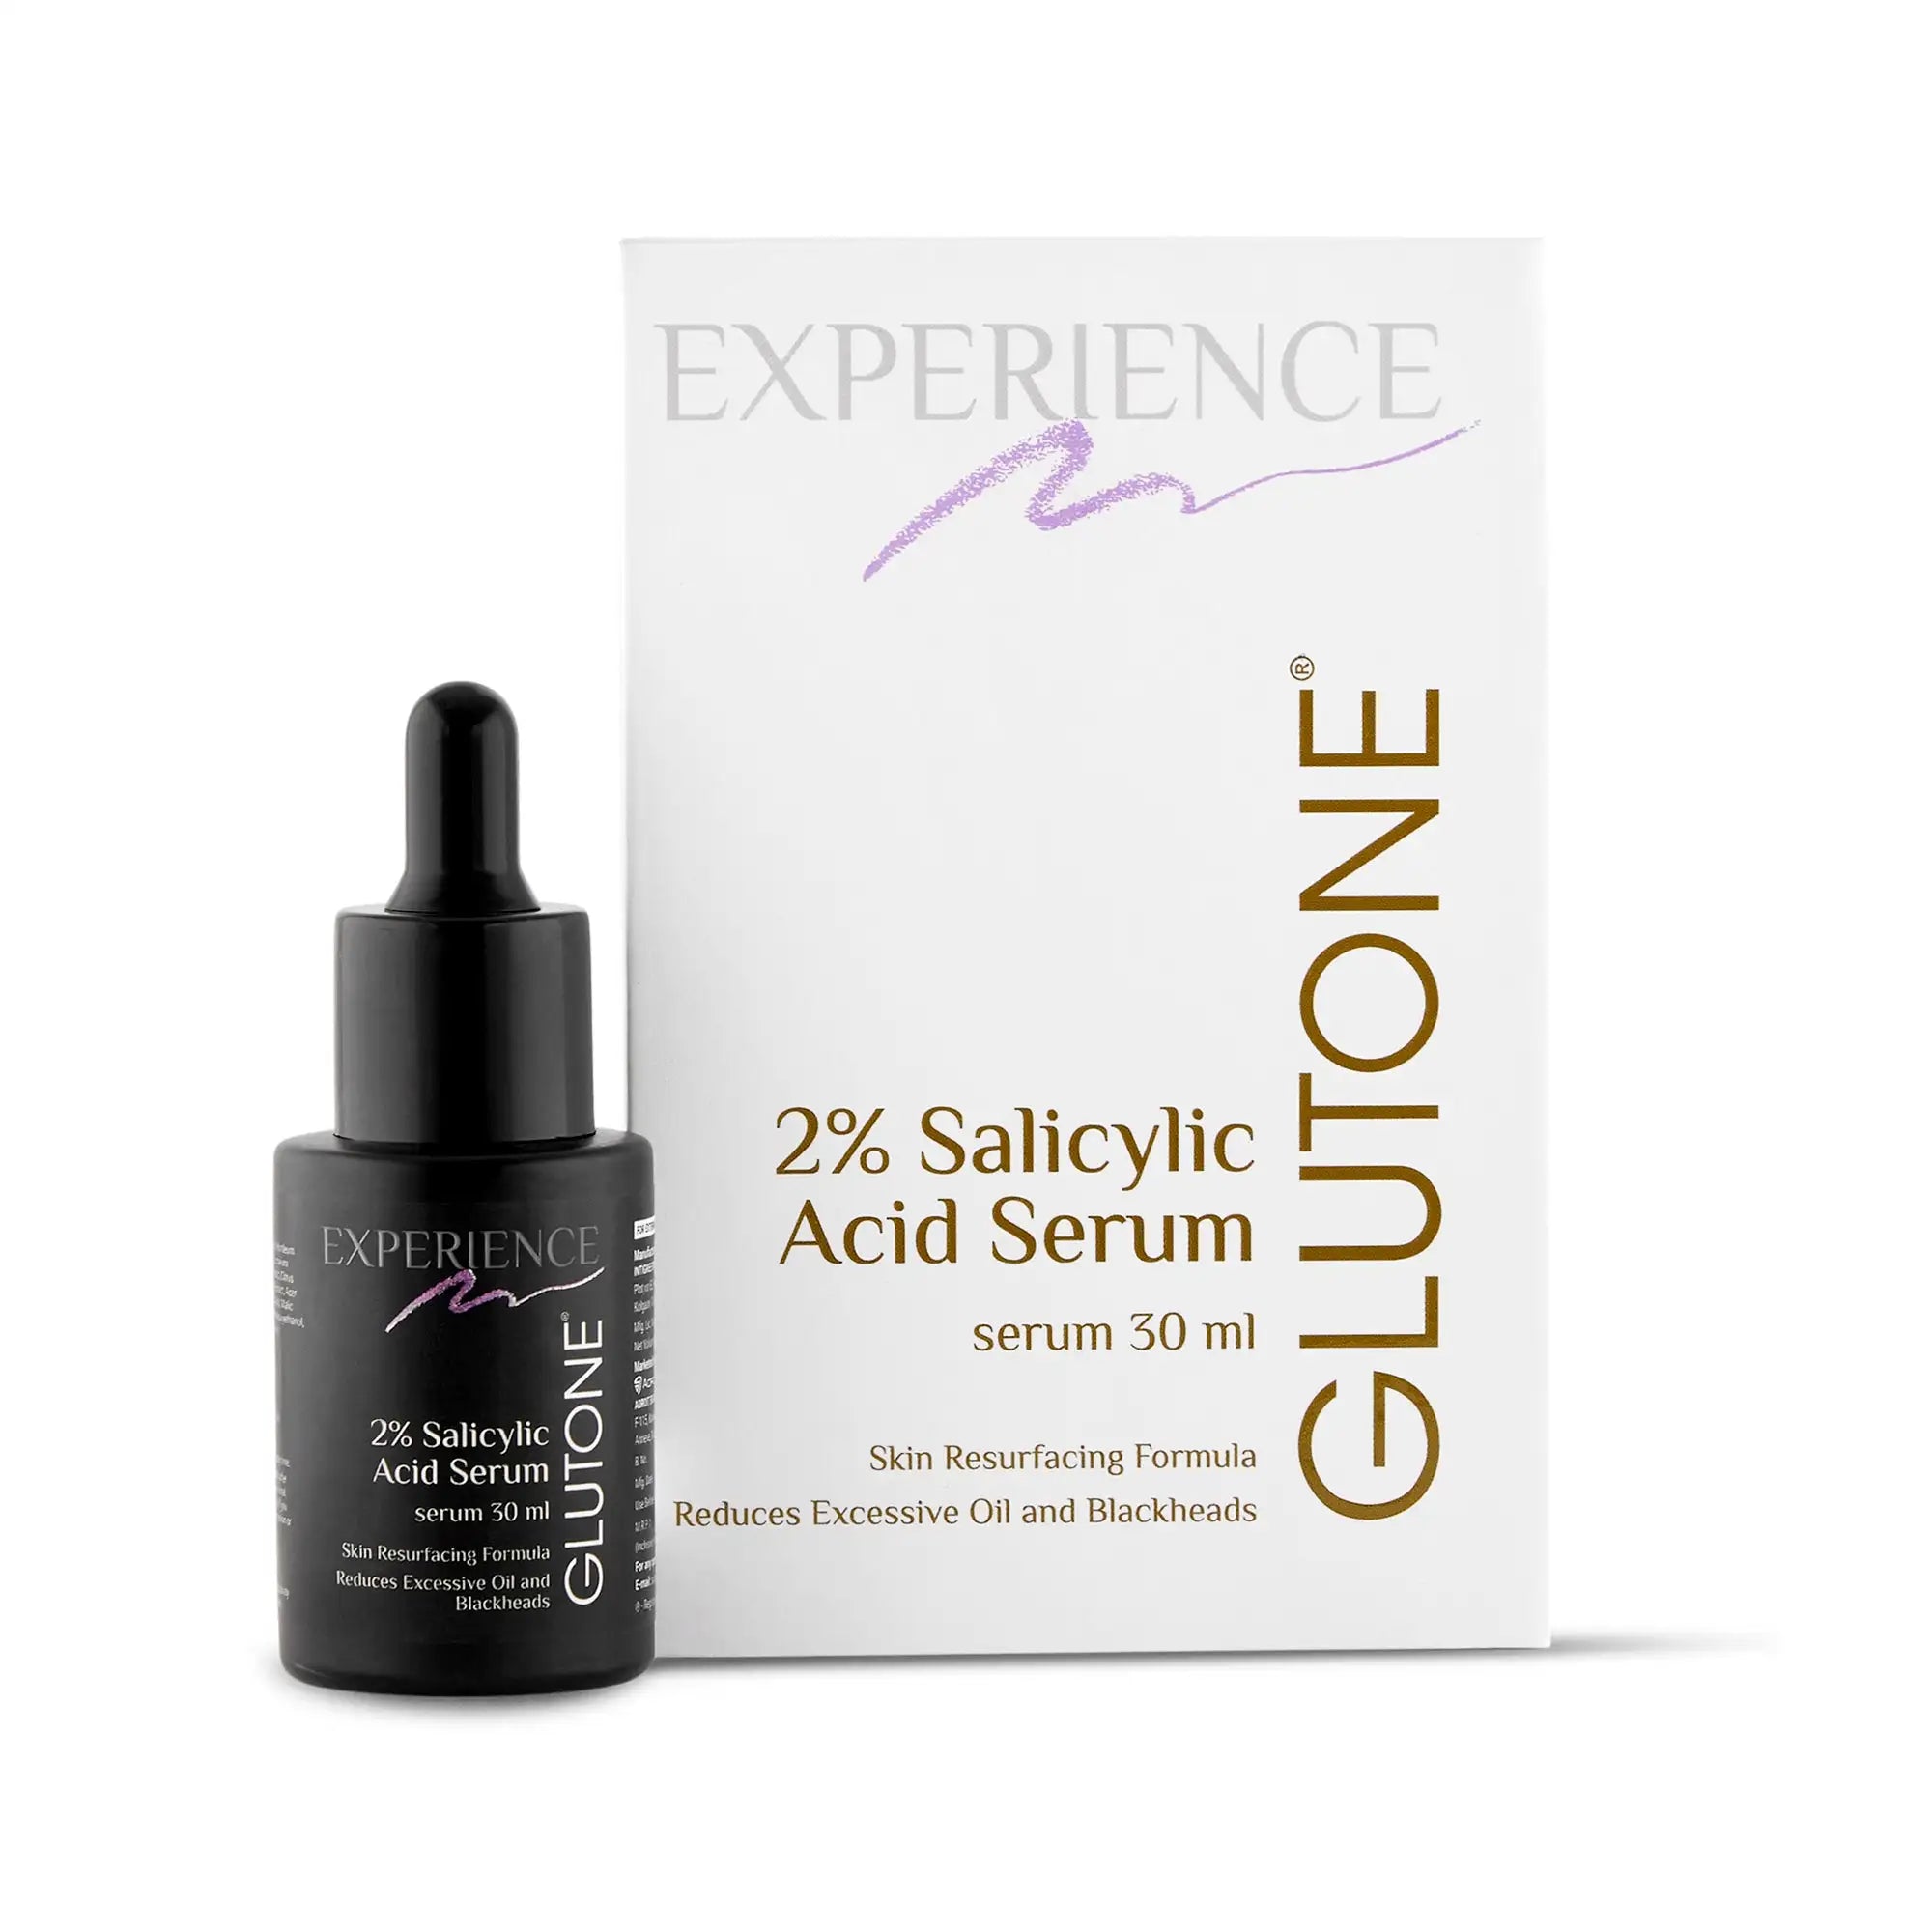 Glutone 2% Salicylic Acid Serum I 30ml I Skin Glow | Radiance | Oily-Free Skin